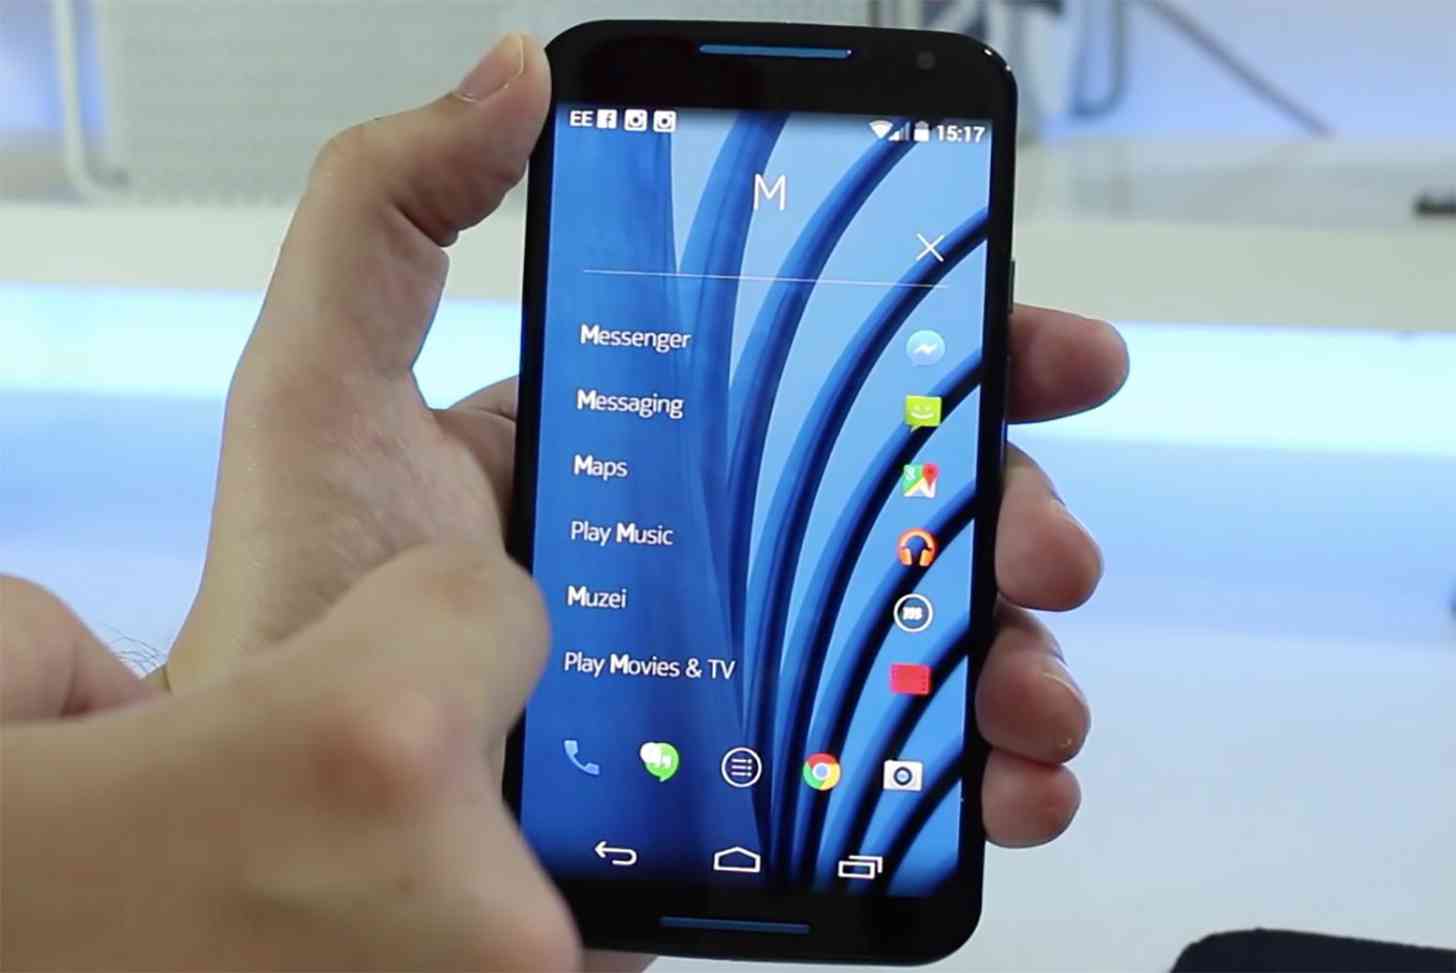 Nokia Z Launcher hands on Moto X